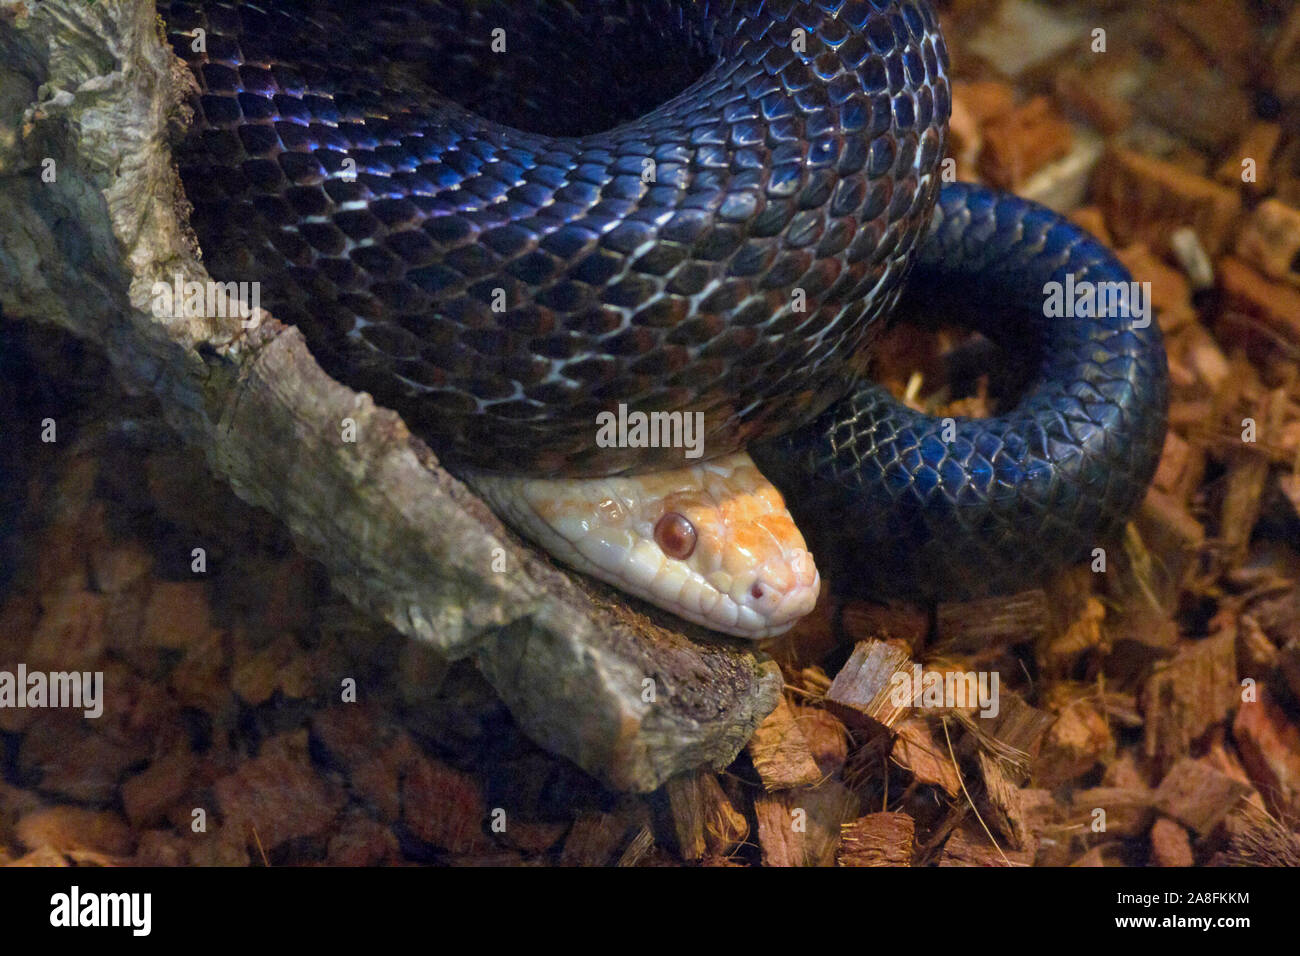 La cabeza de una serpiente pálido mira desde debajo de las bobinas de una gran serpiente negra Foto de stock